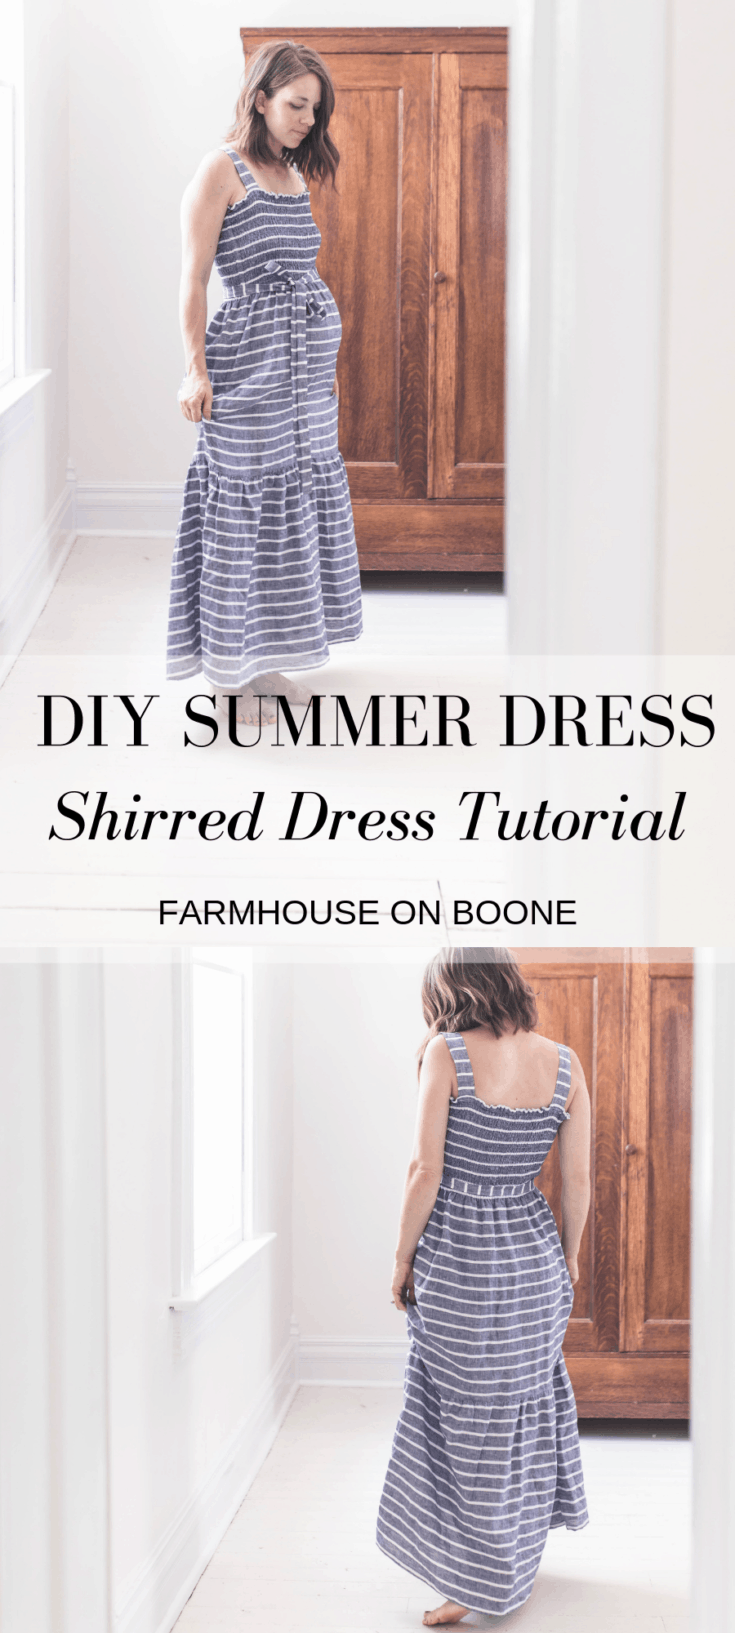 DIY Summer Dress - Shirred Dress Tutorial - Farmhouse on Boone